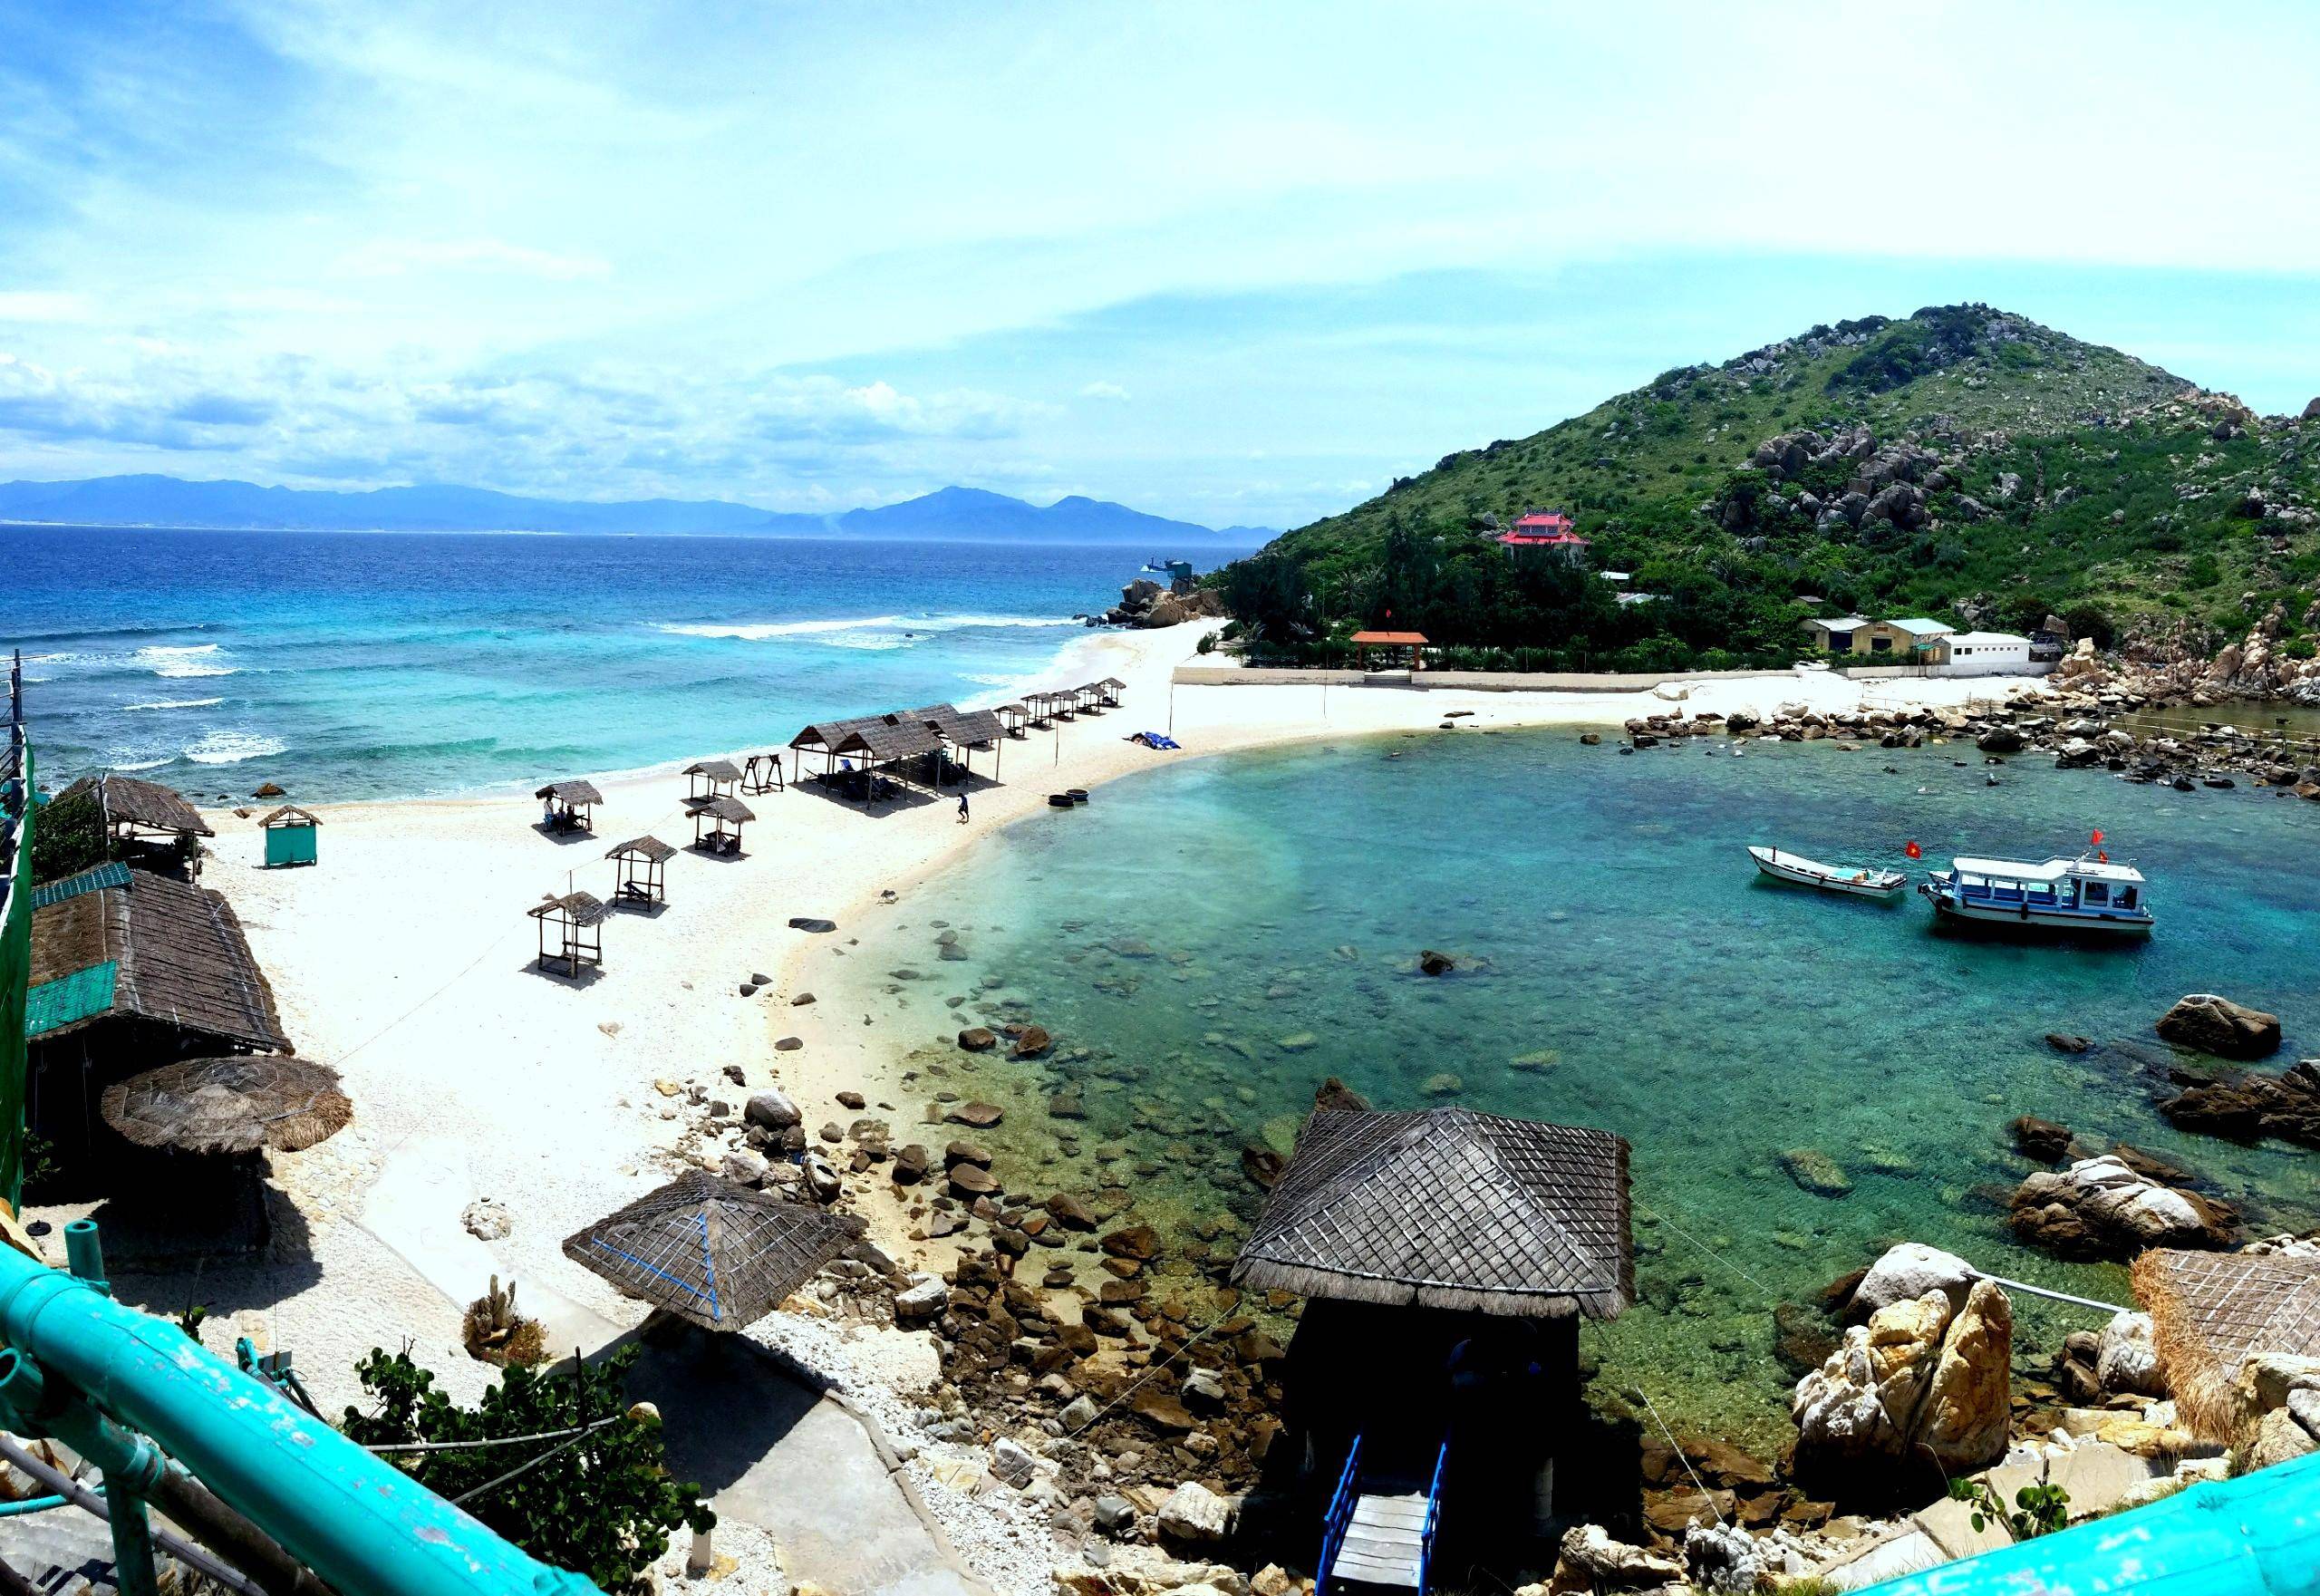 Bãi tắm đôi Đảo Yến (hay còn gọi là hòn Nội) với không gian thơ mộng, thu hút đông đảo du khách đến tham quan mỗi ngày